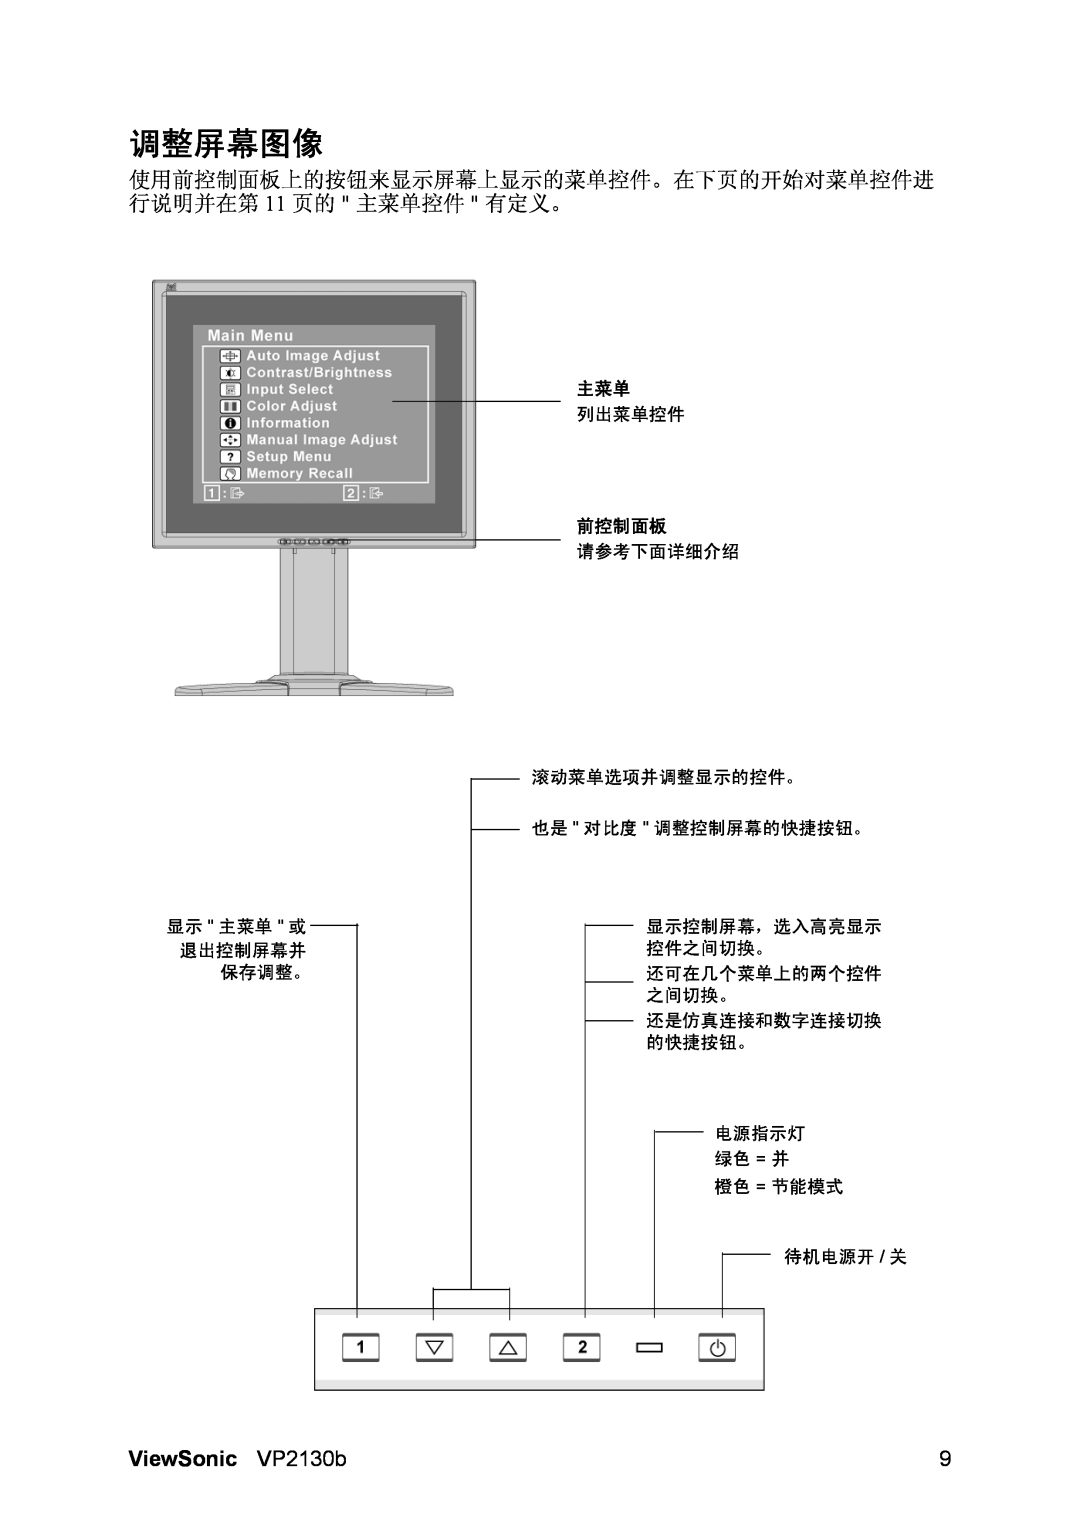 ViewSonic VP2130b-1 manual 调整屏幕图像, ViewSonic VP2130b, 显示 主菜单 或 退出控制屏幕并 保存调整。, 列出菜单控件, 前控制面板, 待机电源开 / 关 